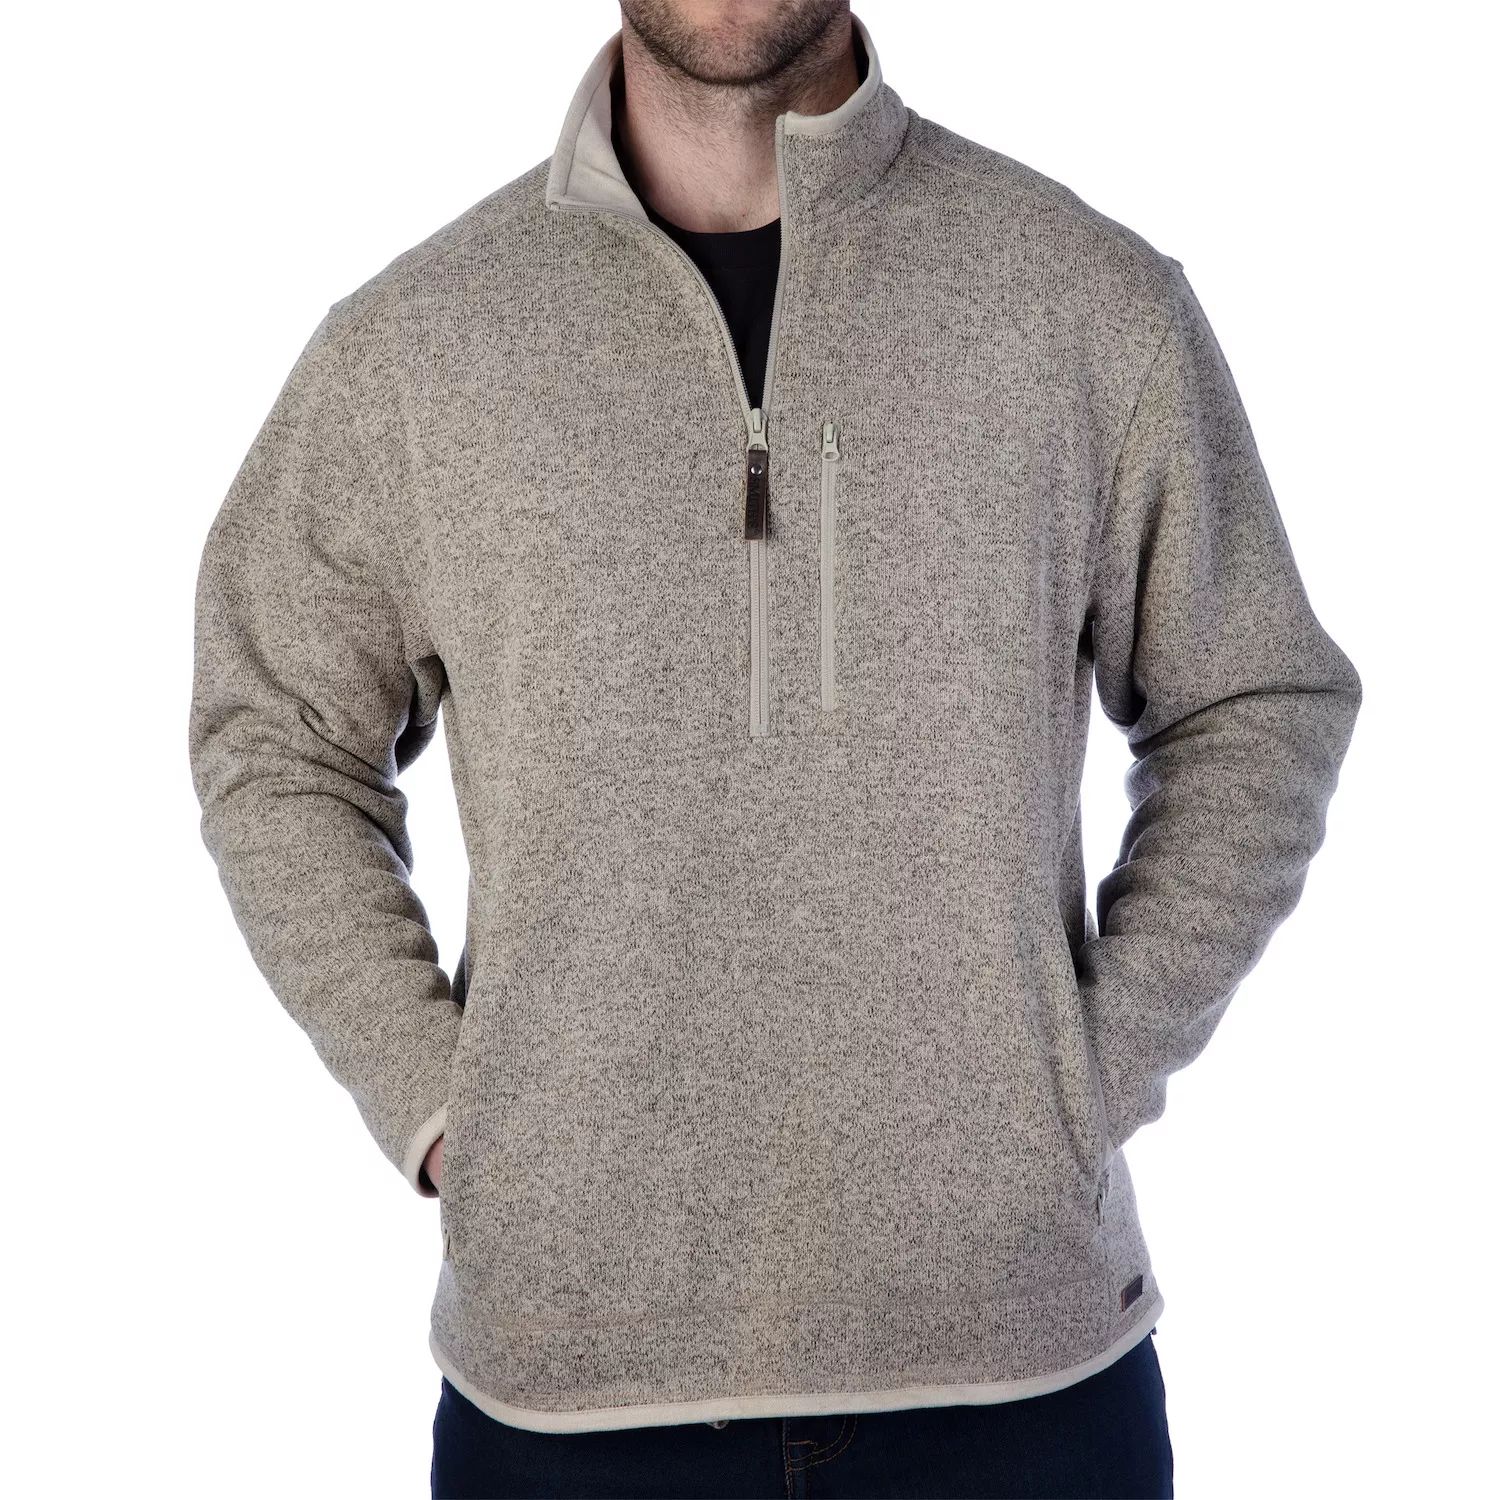 Мужской свитер с молнией на четверть, флисовая куртка-пуловер Smith's Workwear